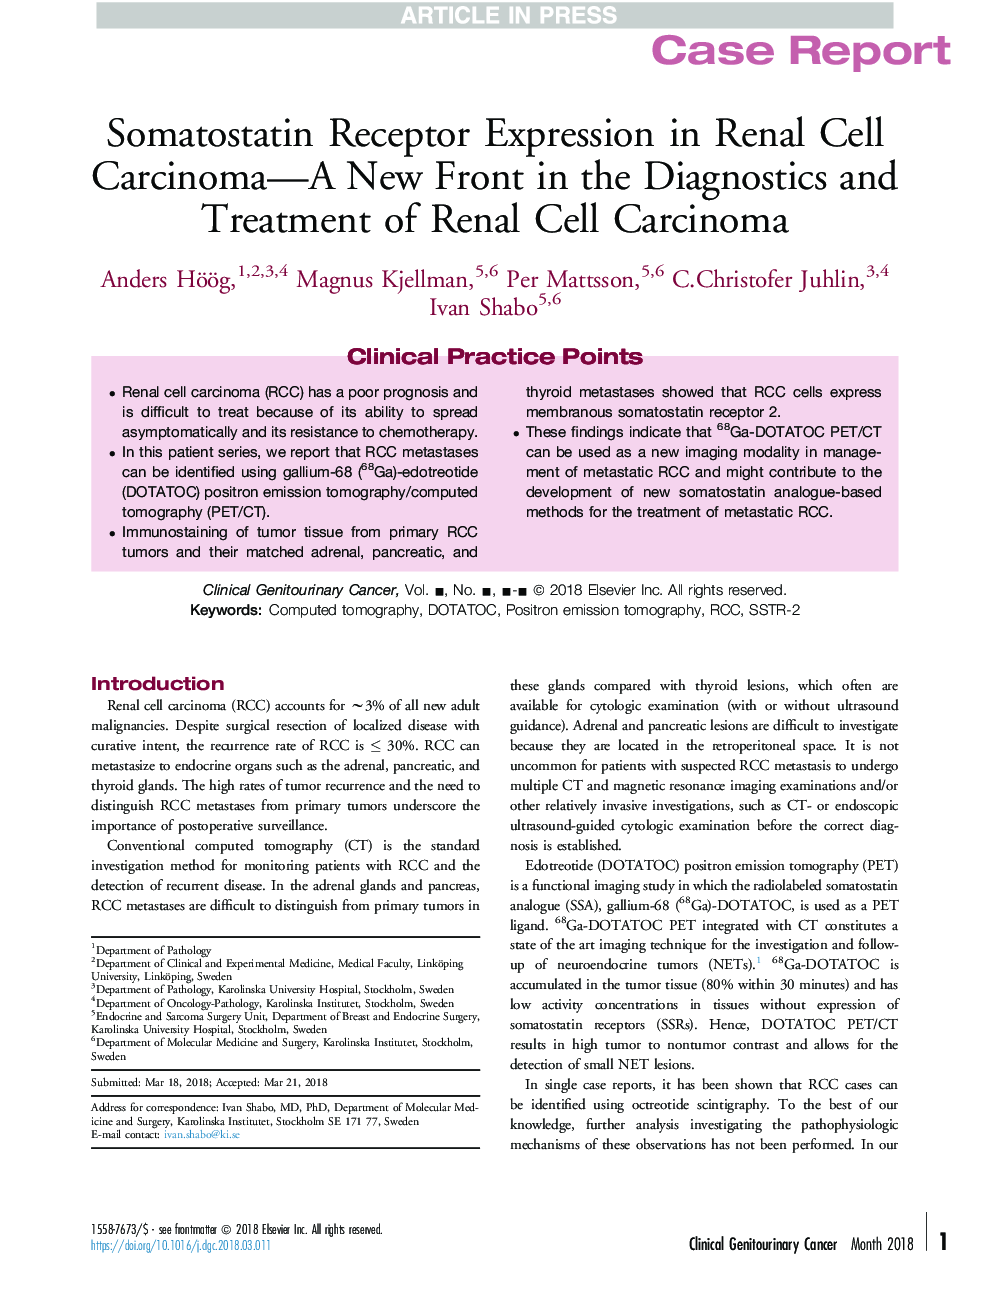 بیان بیانگر گیرنده سموماستاتین در کارسینوم سلولی کلیه - جبهه جدید در تشخیص و درمان کارسینوم سلولی کلیه 